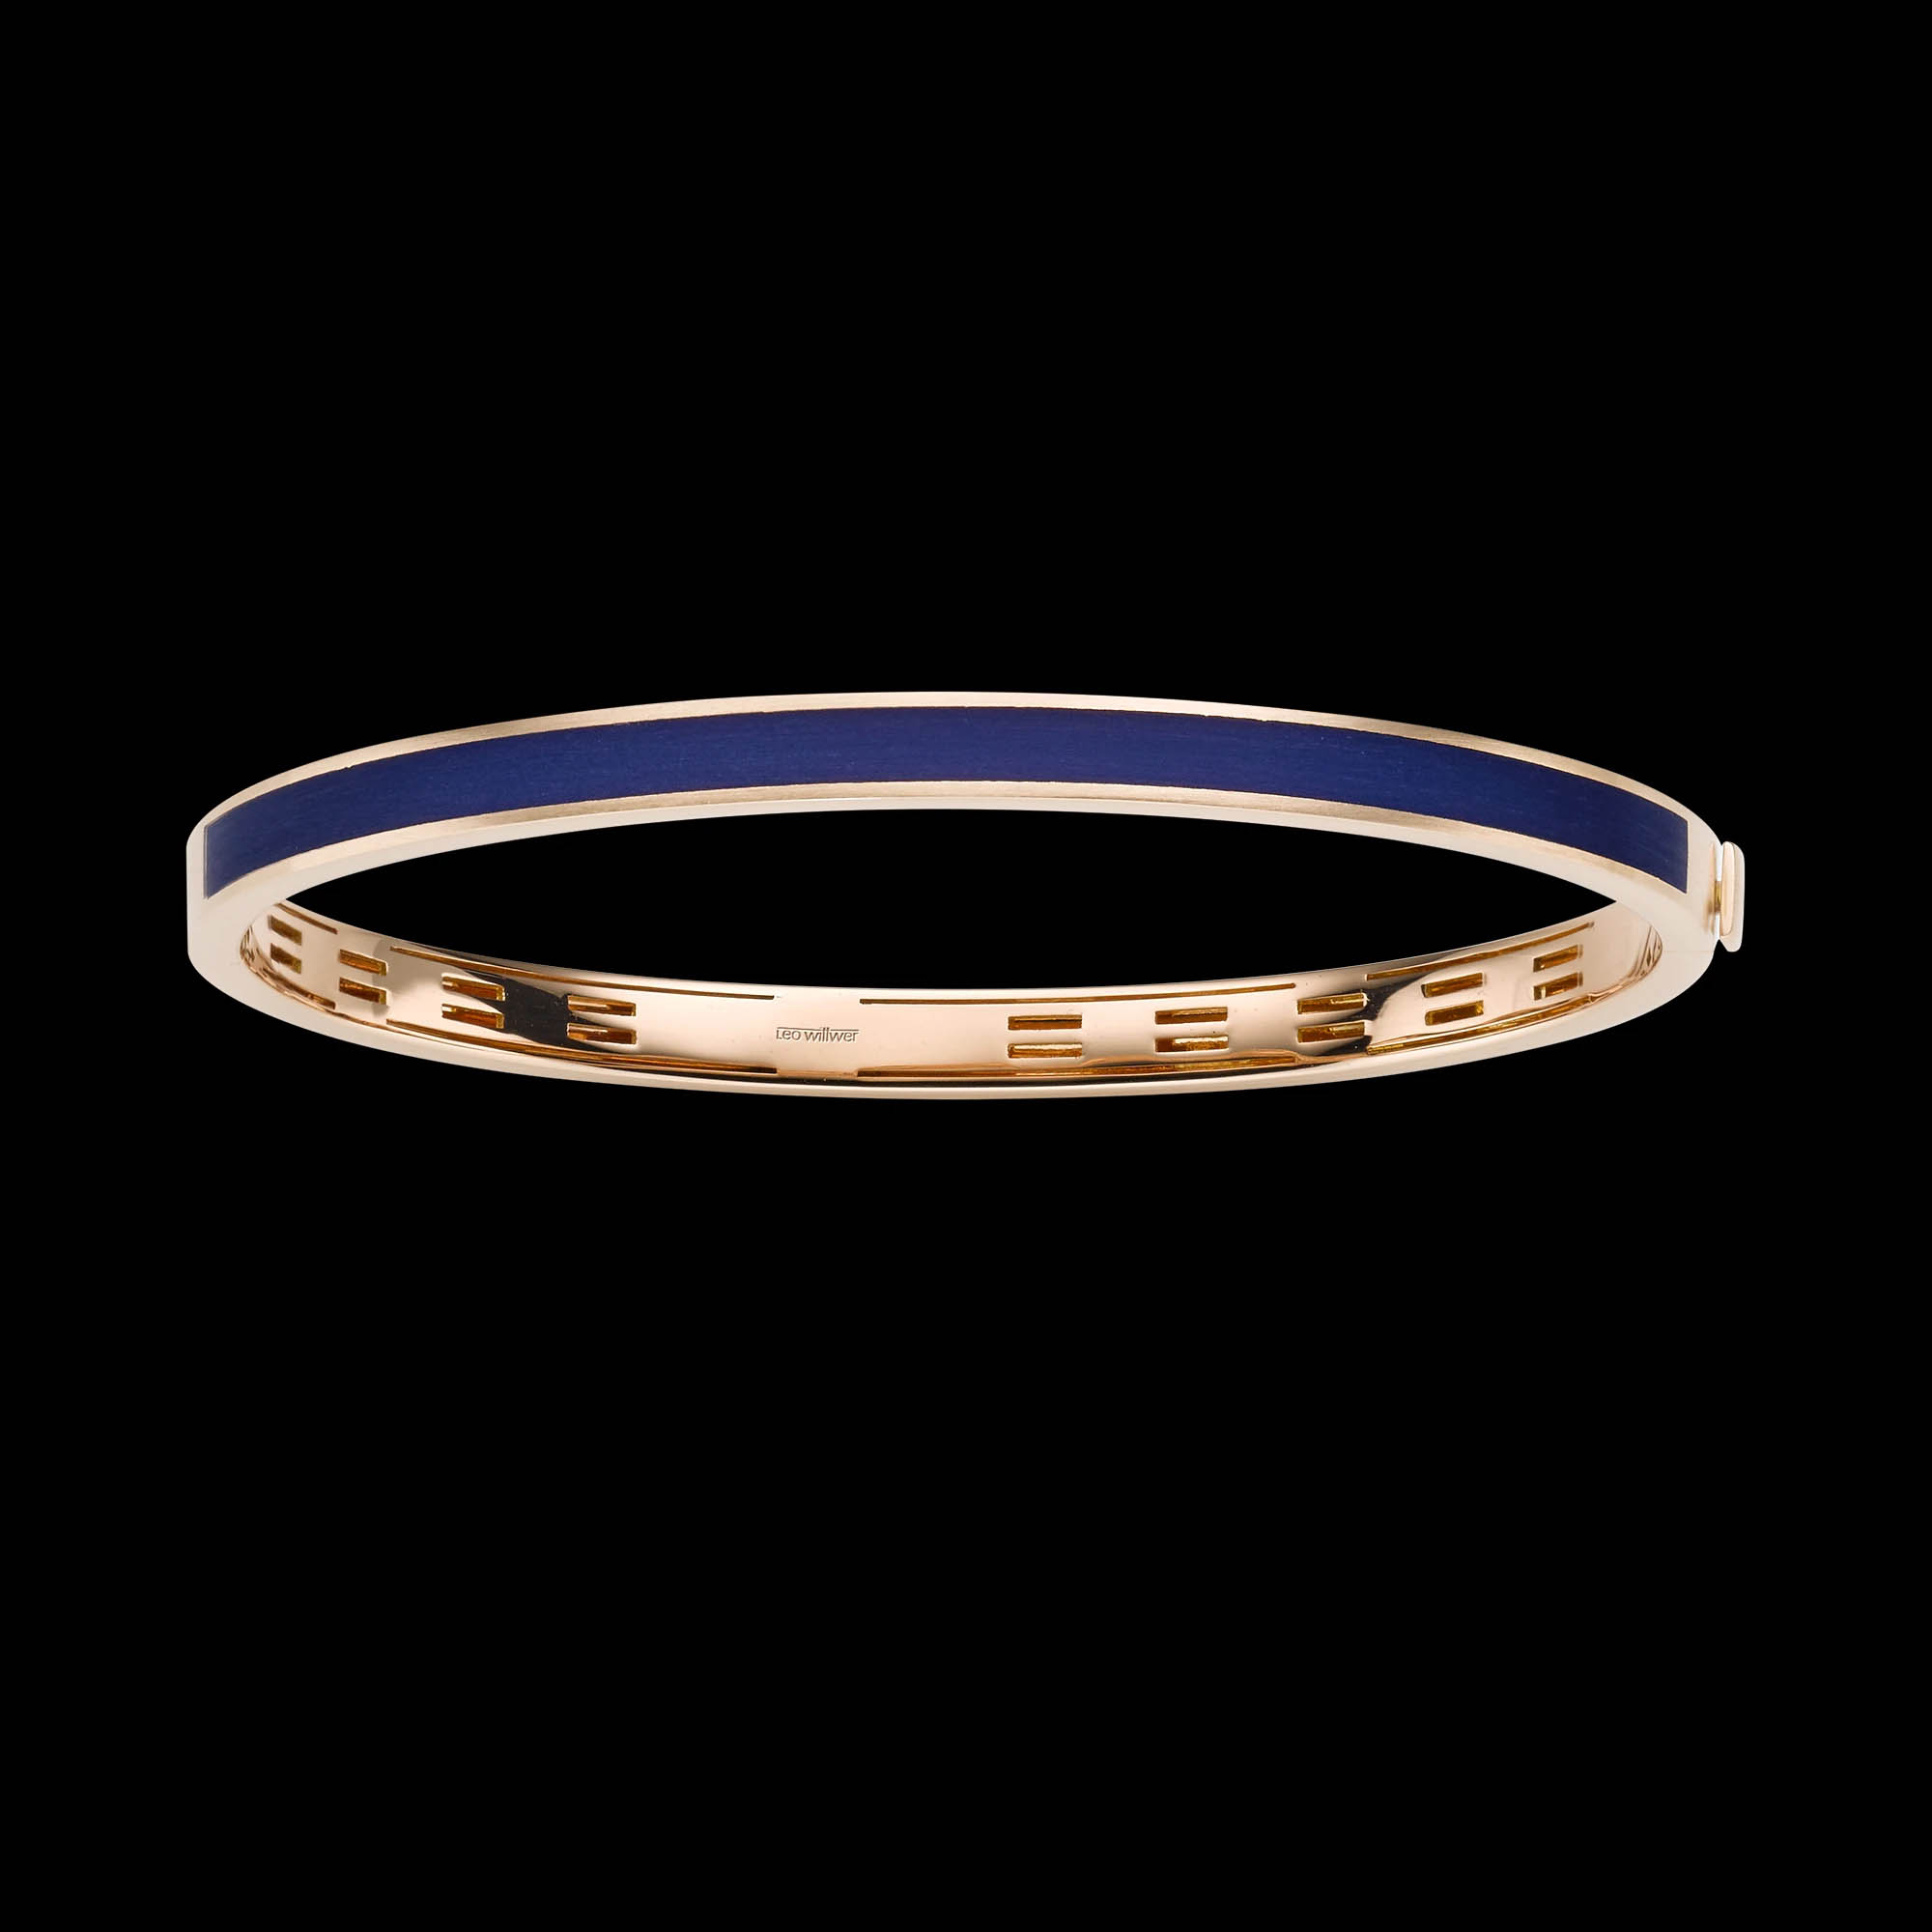 Sprzedaż hurtowa bransoletek z różowego złota OEM/ODM Wybór biżuterii dla najlepszych w wyjątkowej lub niestandardowej sprzedaży hurtowej